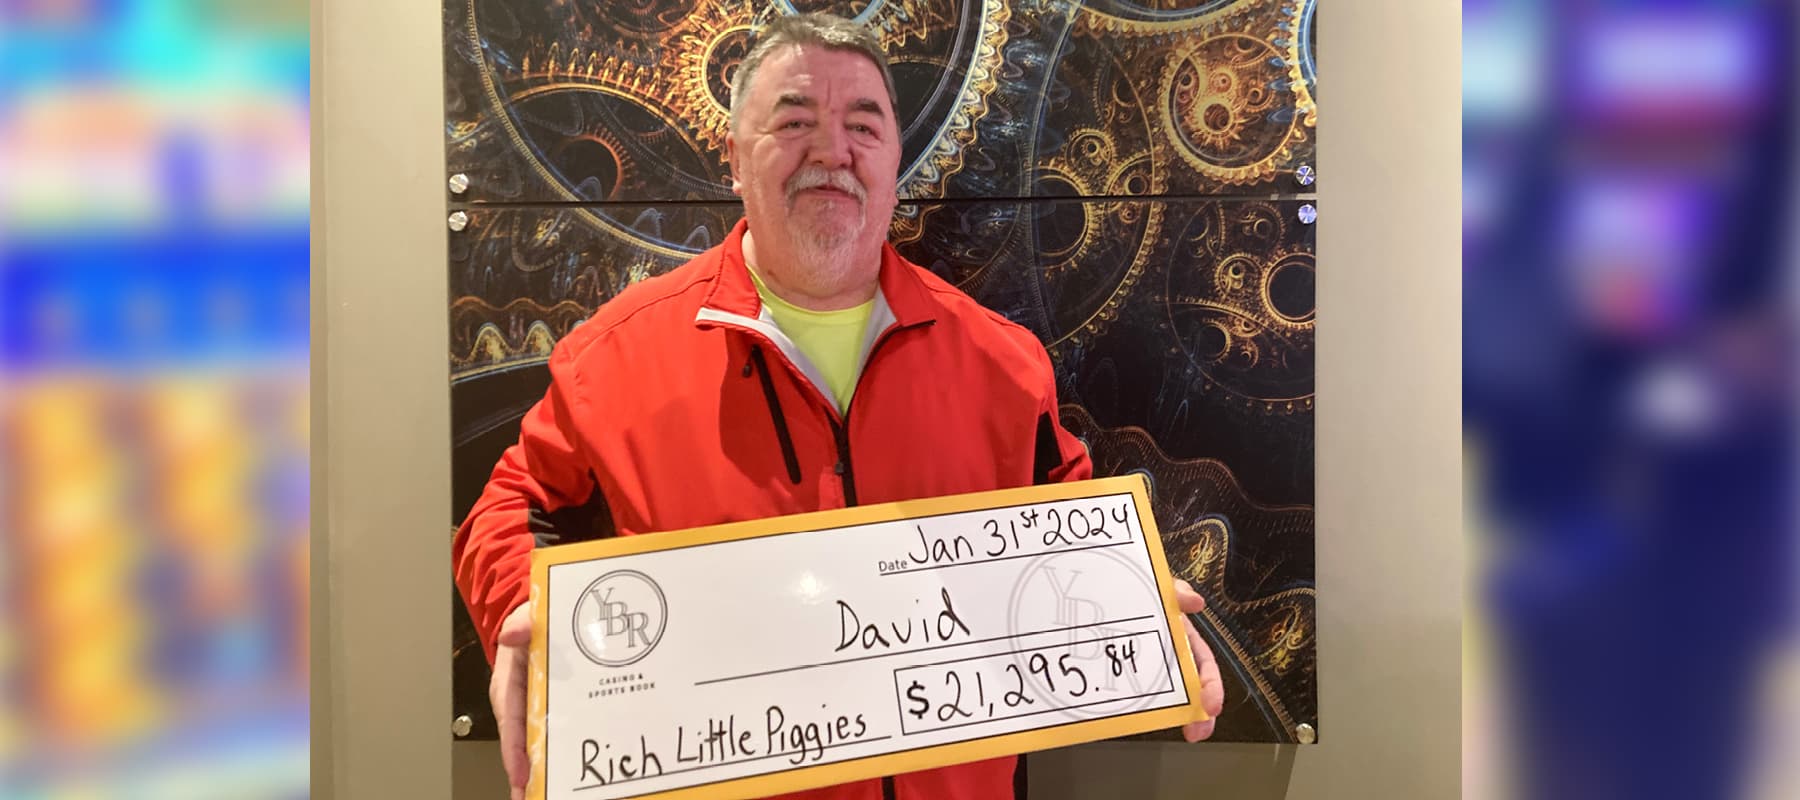 David won $21,295